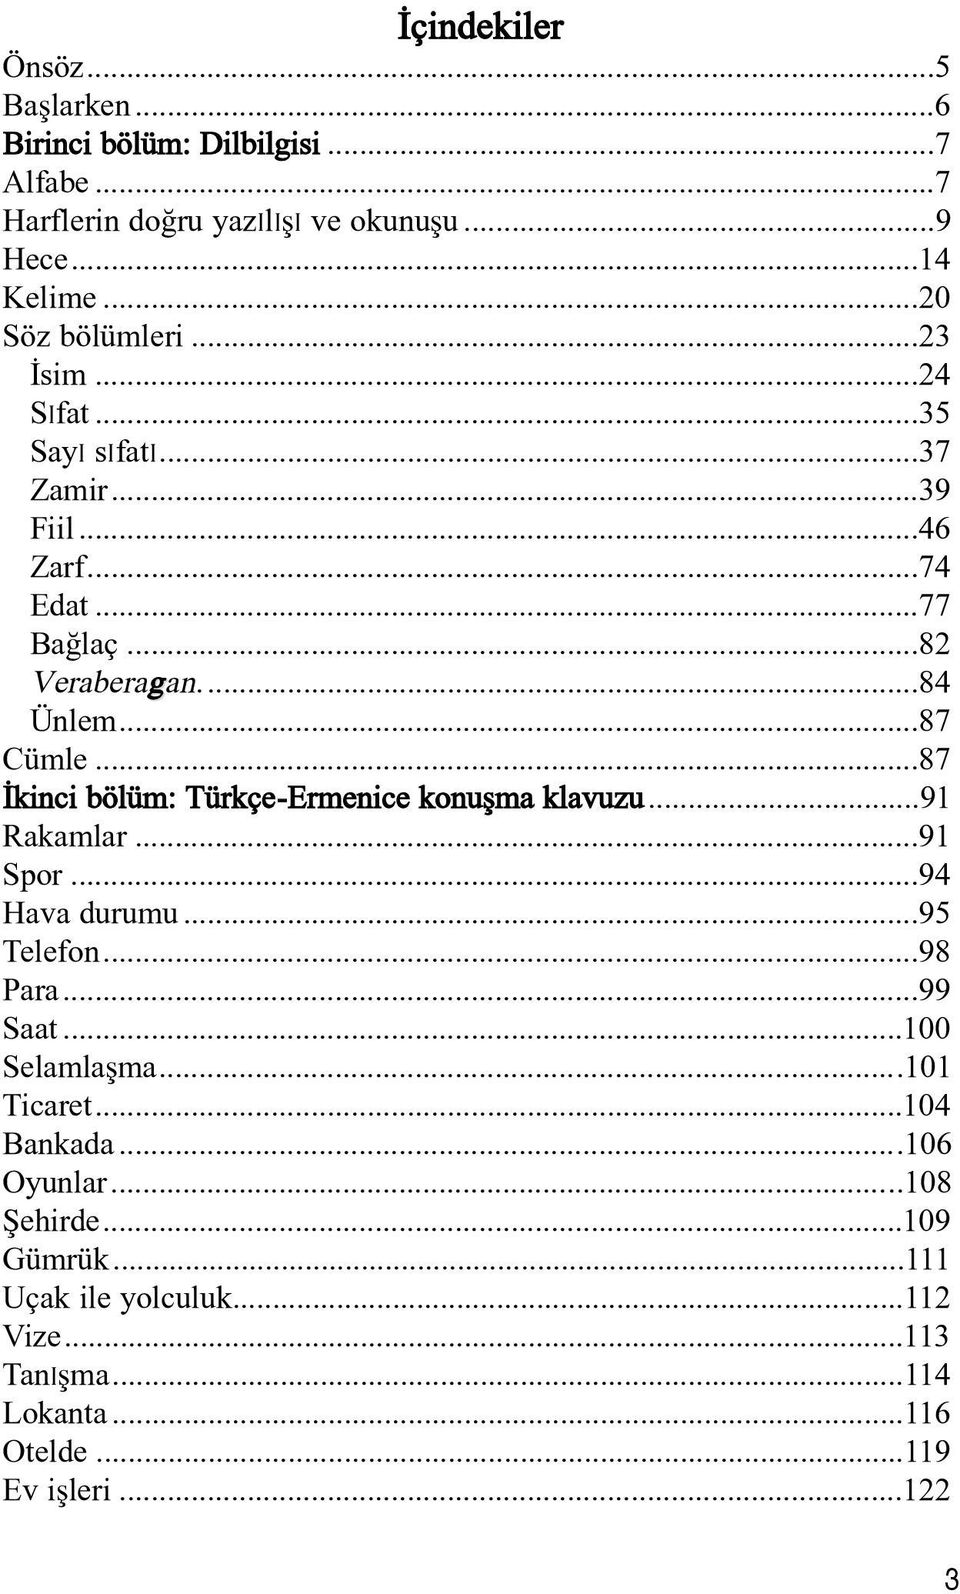 ..87 %kinci bölüm: Türkçe-Ermenice konu'ma klavuzu...91 Rakamlar...91 Spor...94 Hava durumu...95 Telefon...98 Para...99 Saat...100 Selamla'ma.